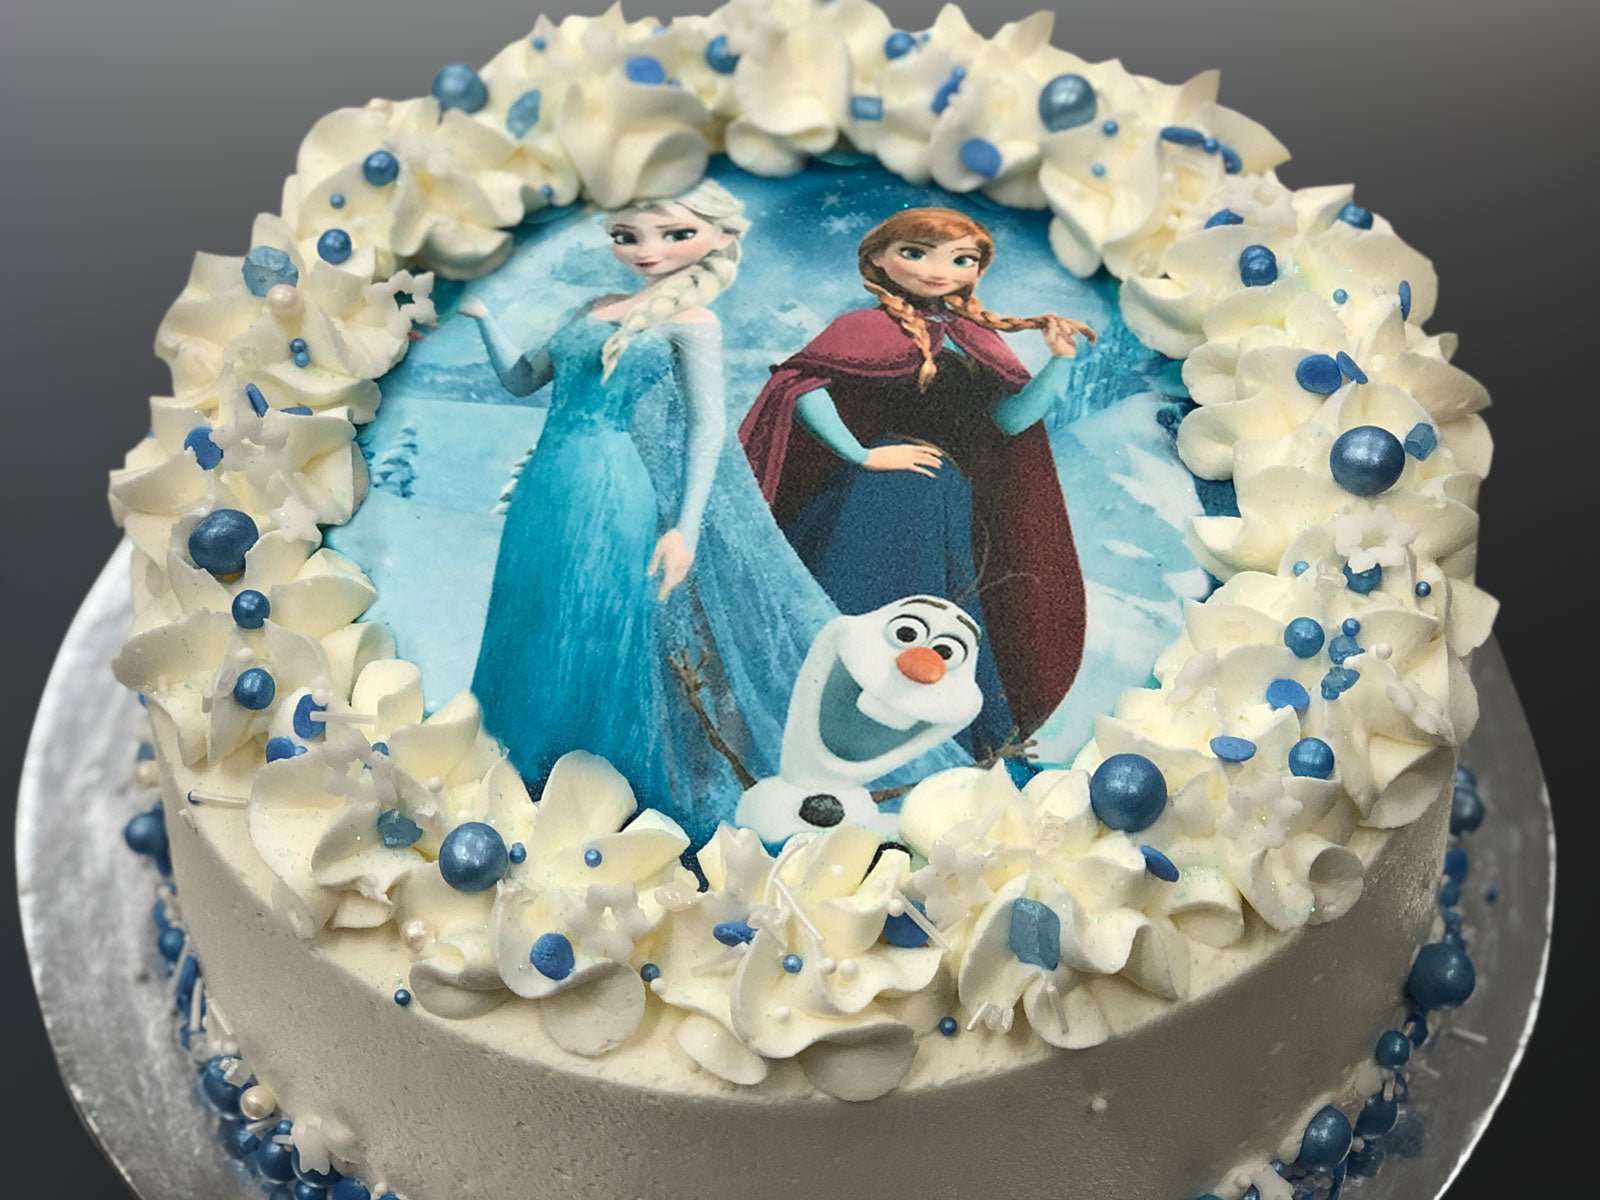 Frozen Elsa inspired cake - Cakey Goodness